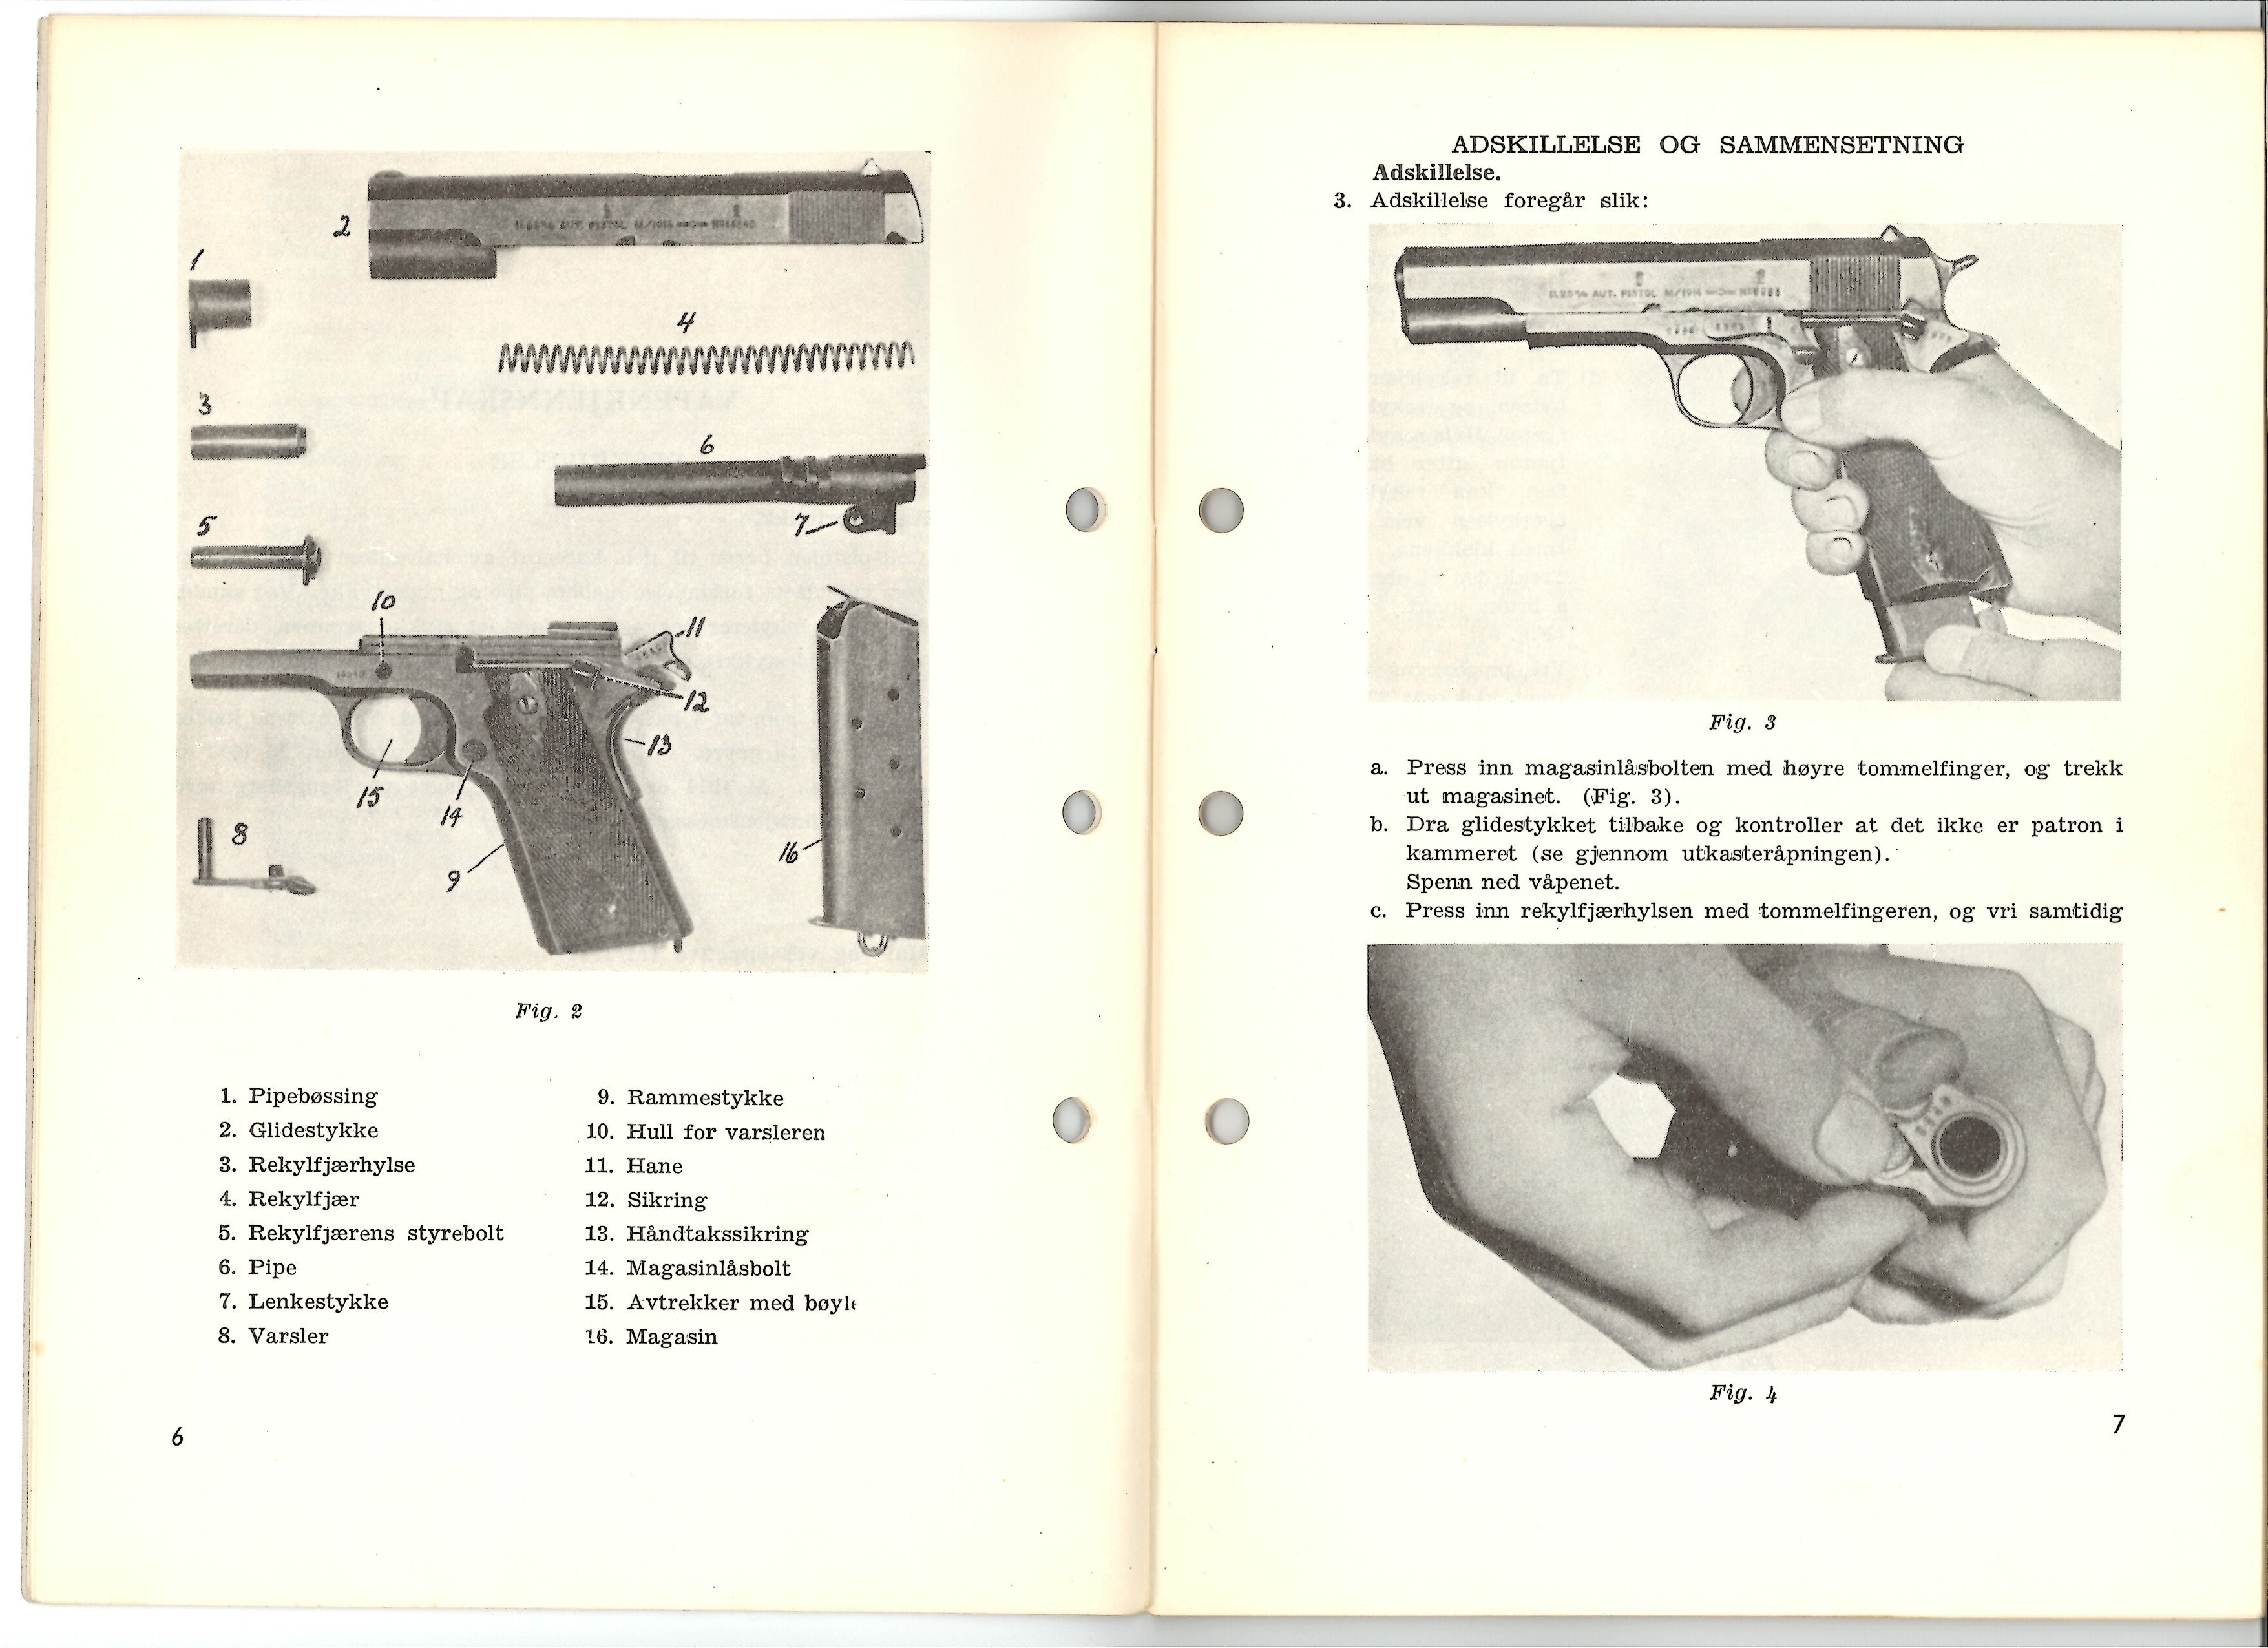 ./doc/reglement/M1914/Colt-M1914-Instruks-for-skyting-1956-5.jpg